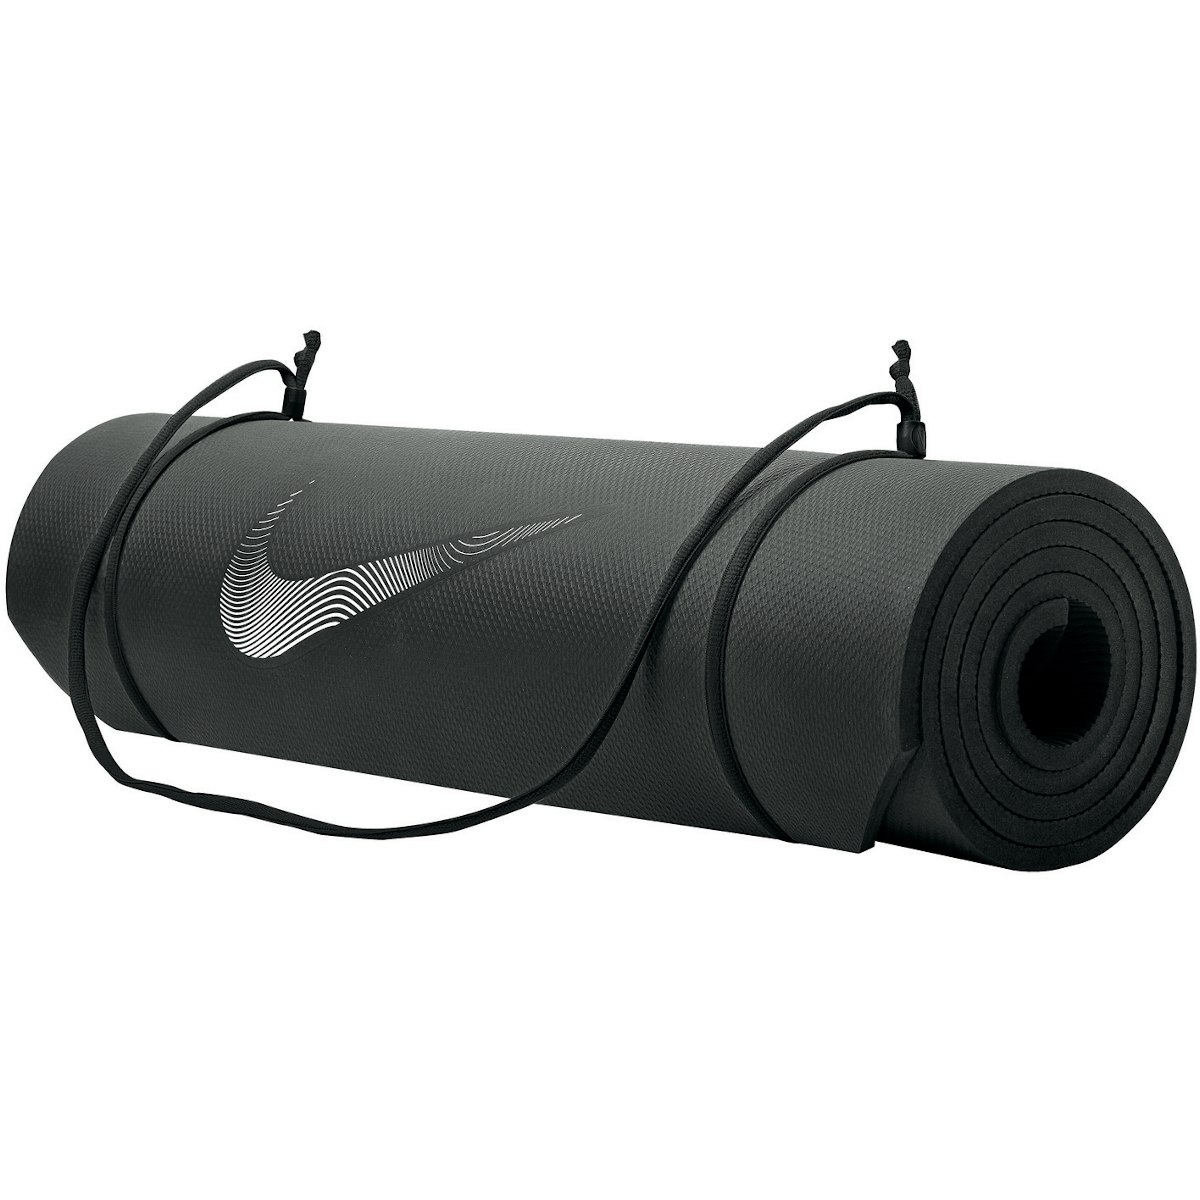 Produktbild von Nike Trainingsmatte 2.0 - schwarz/weiß 010